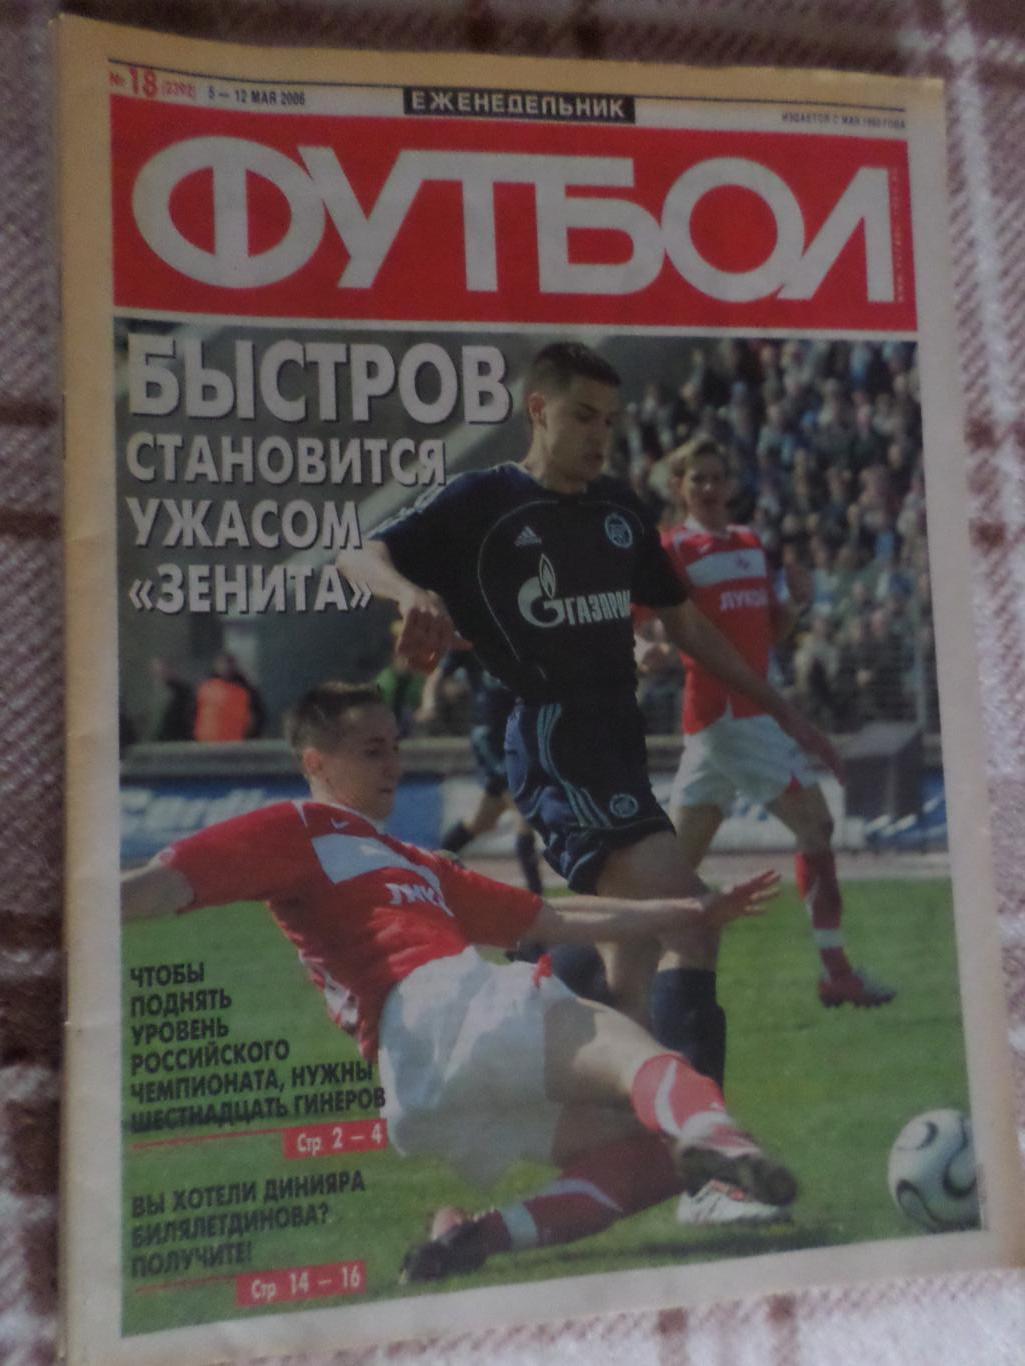 Еженедельник Футбол ( Москва) номер 18, 2006 г